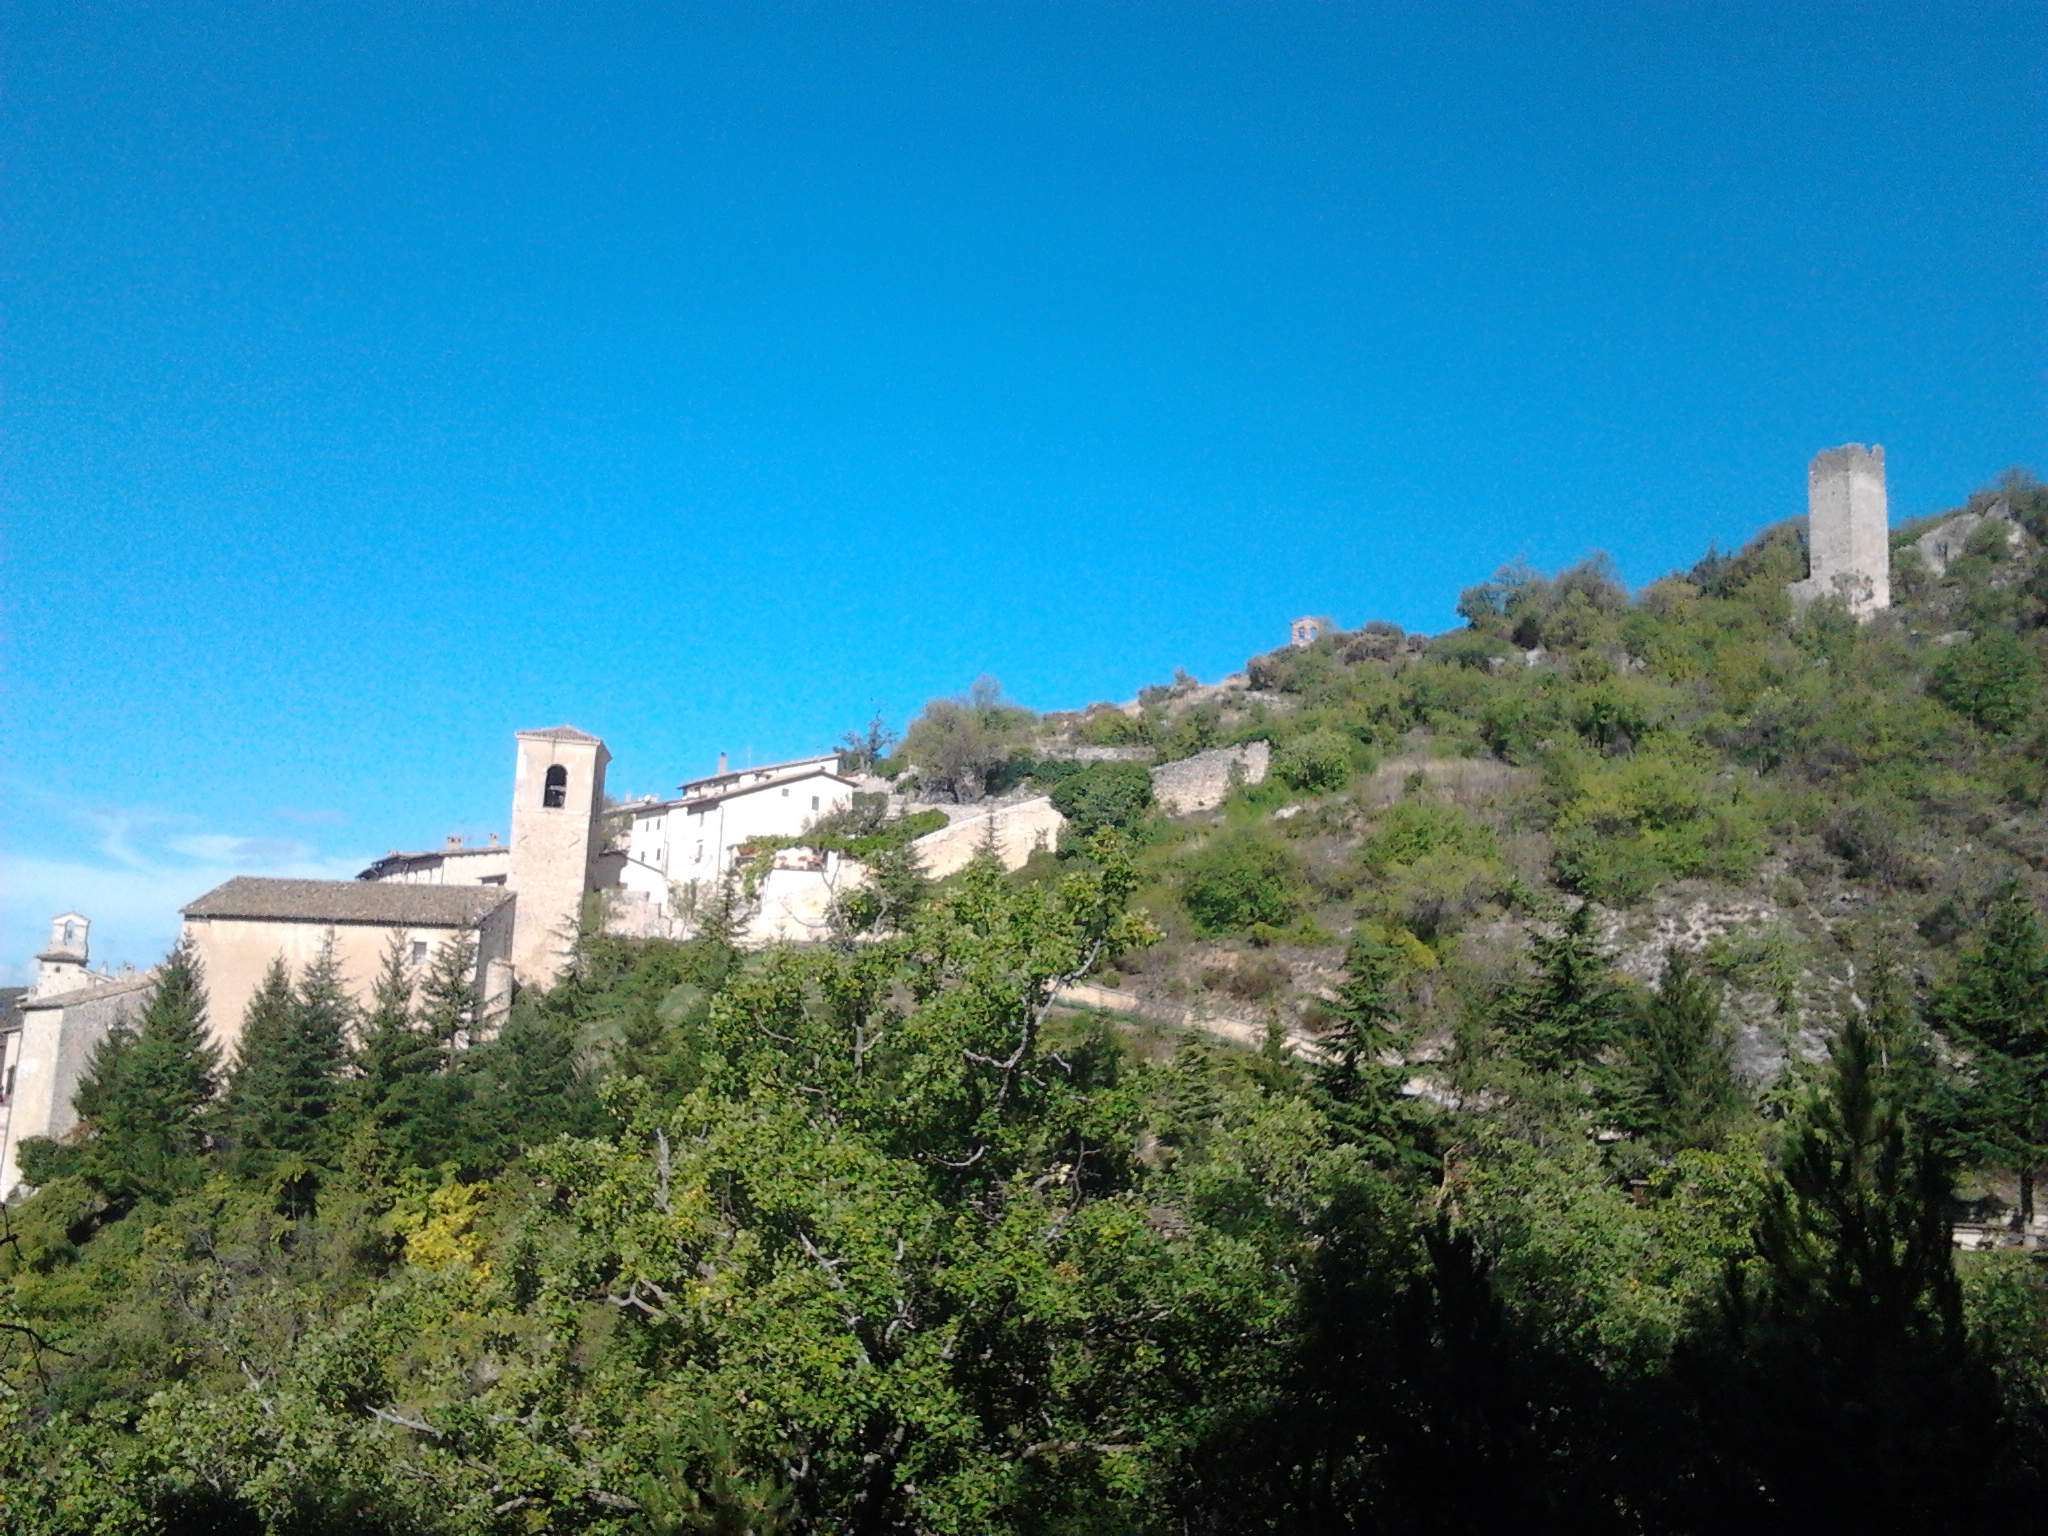 La favolosa valle Castoriana e l'antichissima abbazia di S.Eutizio